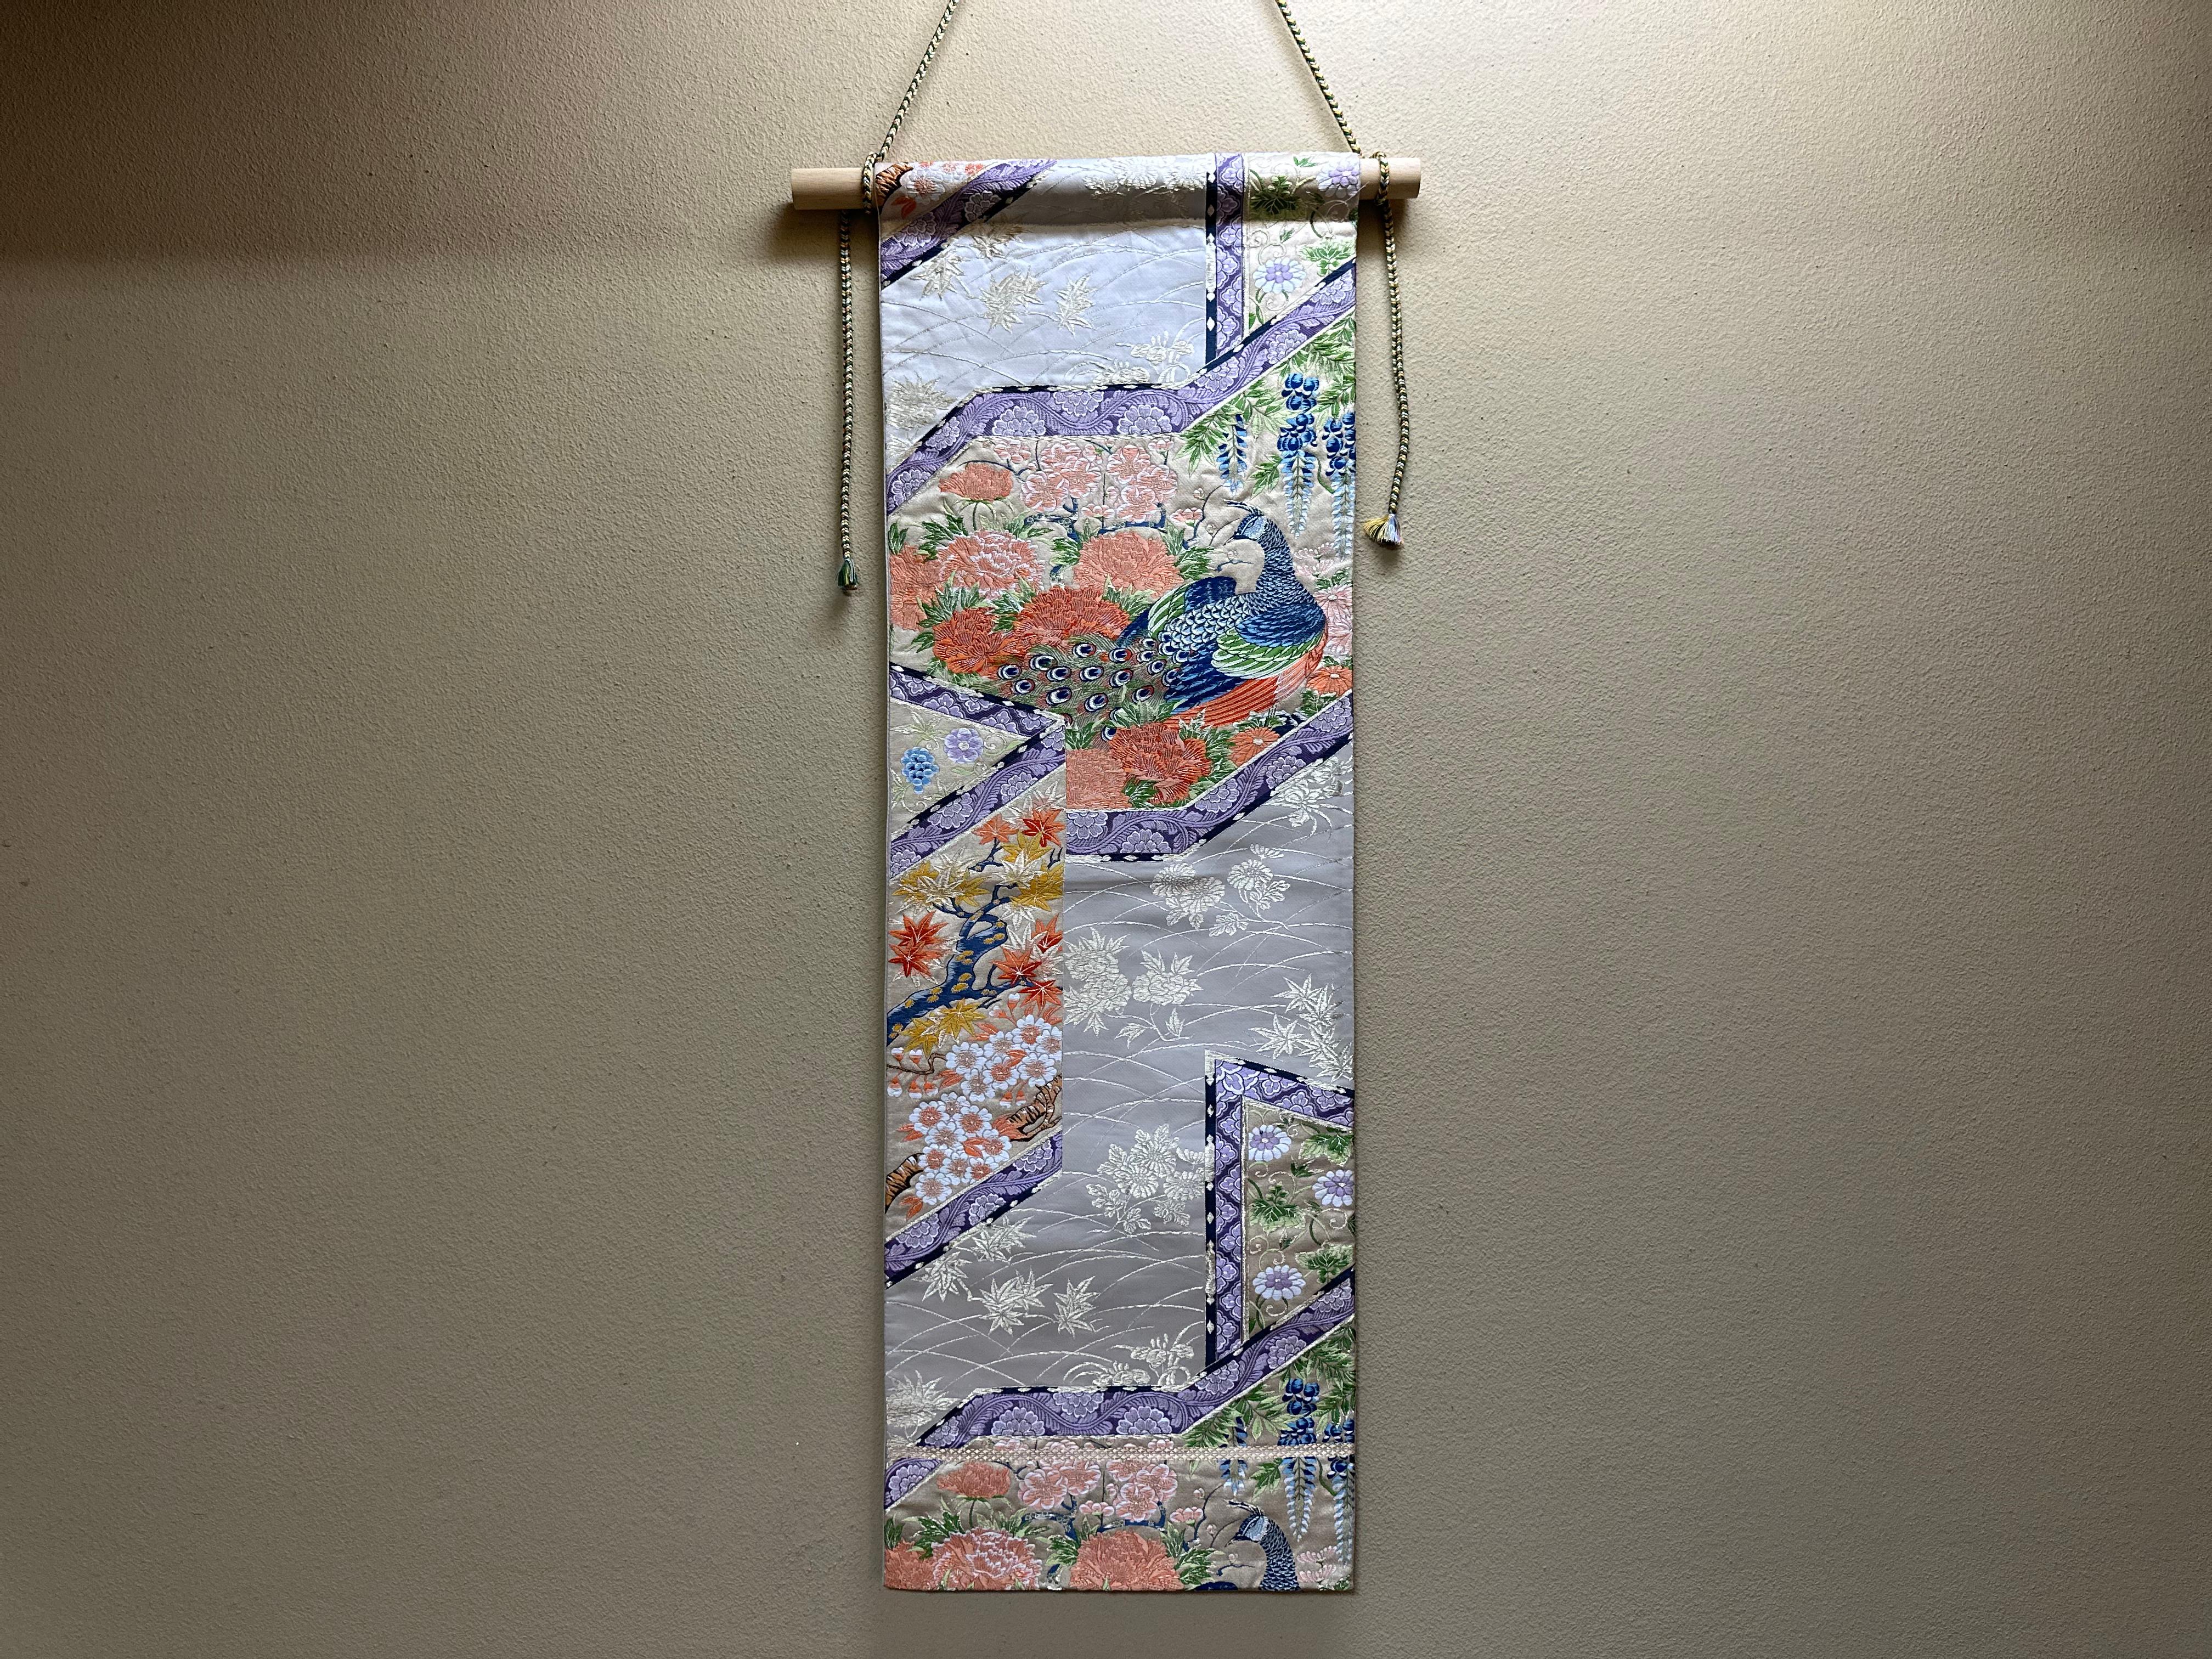 Cette tapisserie de kimono japonais est unique au monde. Il a été soigneusement et méticuleusement brodé par des artisans japonais.

 Nous sommes fiers de présenter cette tapisserie de Kimono, brodée de paons et de fleurs des quatre saisons sur un